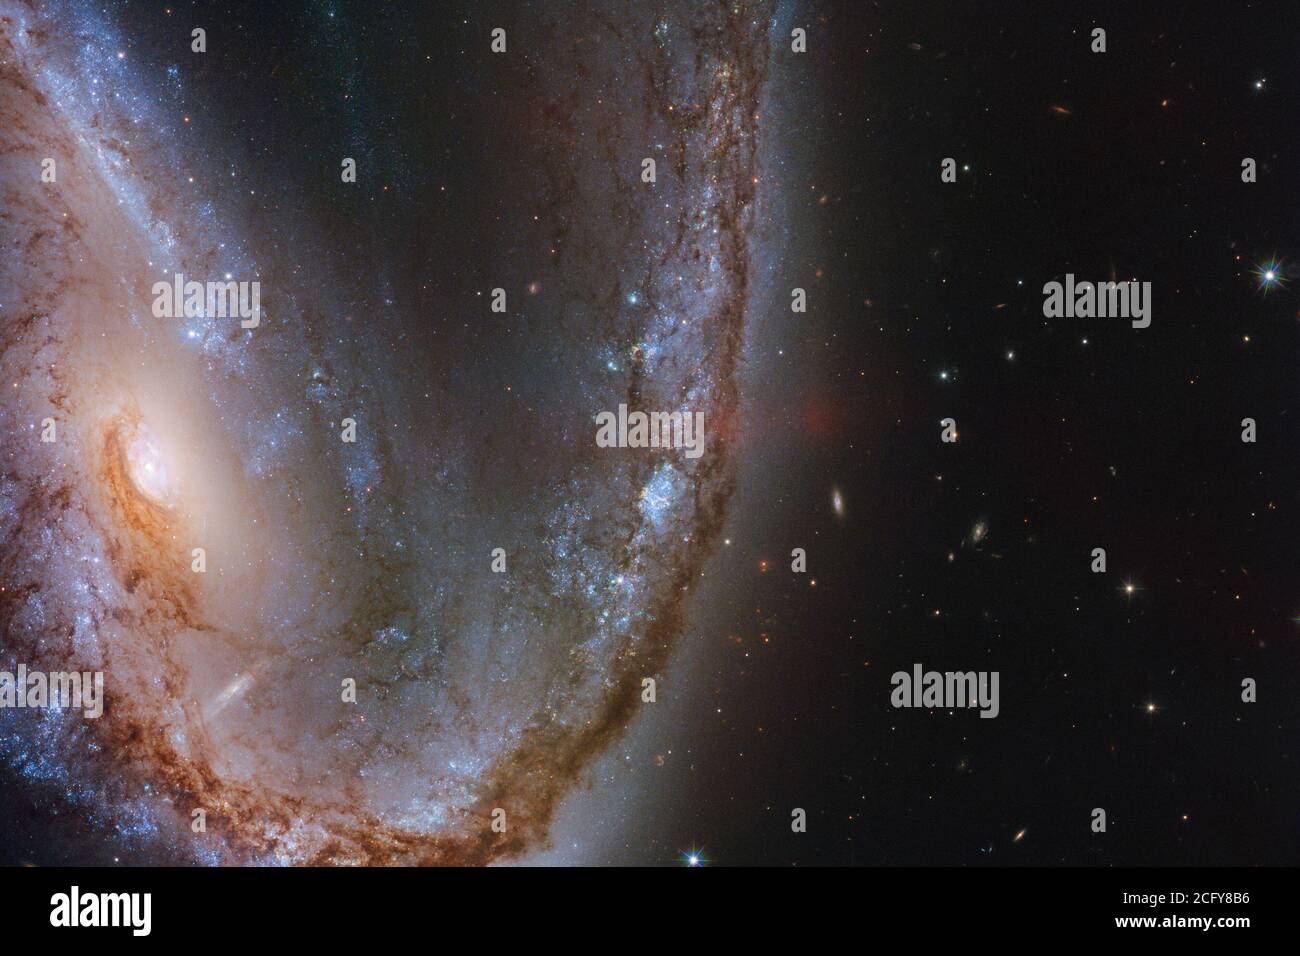 Cette image du télescope spatial Hubble NASA/ESA présente la spectaculaire galaxie NGC 2442, surnommée la galaxie Meathook en raison de sa forme extraordinairement asymétrique et irrégulière. Cette galaxie a été l'hôte d'une explosion de supernova repérée en mars 2015, connue sous le nom de SN 2015F, créée par une étoile naine blanche. La naine blanche faisait partie d'un système binaire d'étoiles et siphonne la masse de son compagnon, devenant finalement trop gourmande et prenant sur plus qu'elle ne pourrait gérer. Ce déséquilibre de l'étoile et déclenché une fusion nucléaire galopante qui a finalement conduit à une explosion de supernova intensément violente. NASA/ESA Banque D'Images